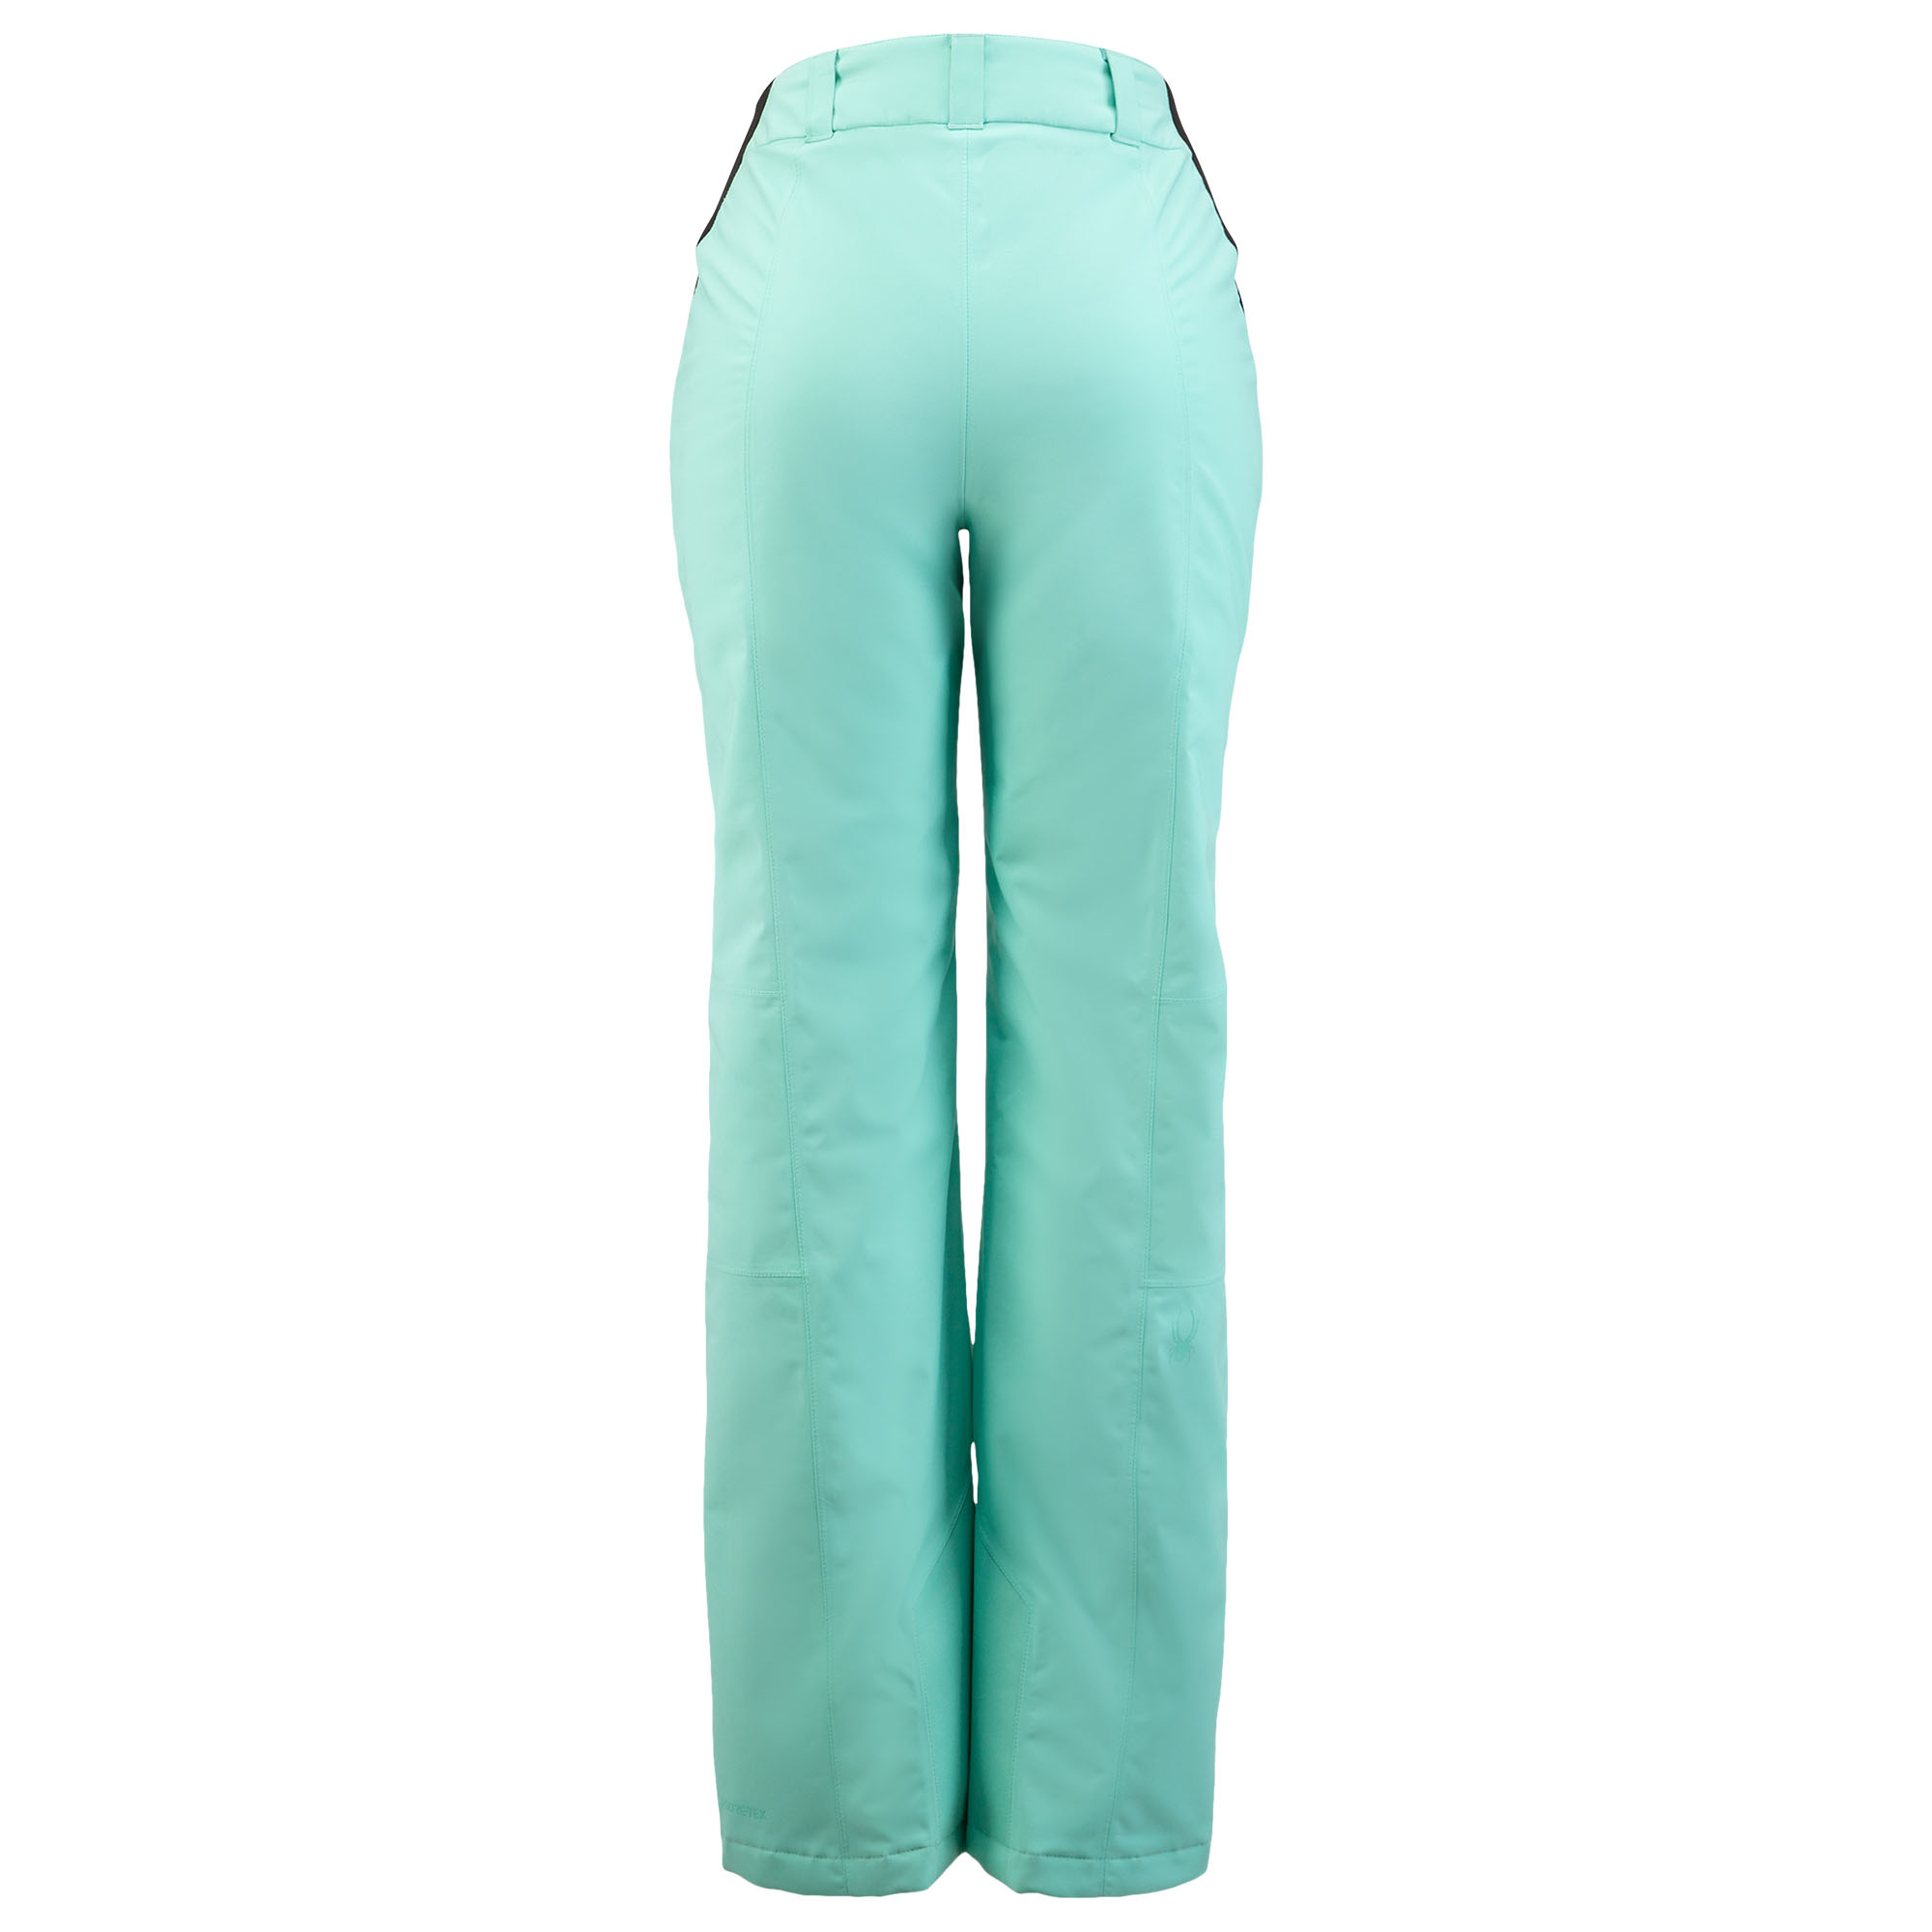 Spyder Winner Tailored GORE-TEX Tall Pants - Women's